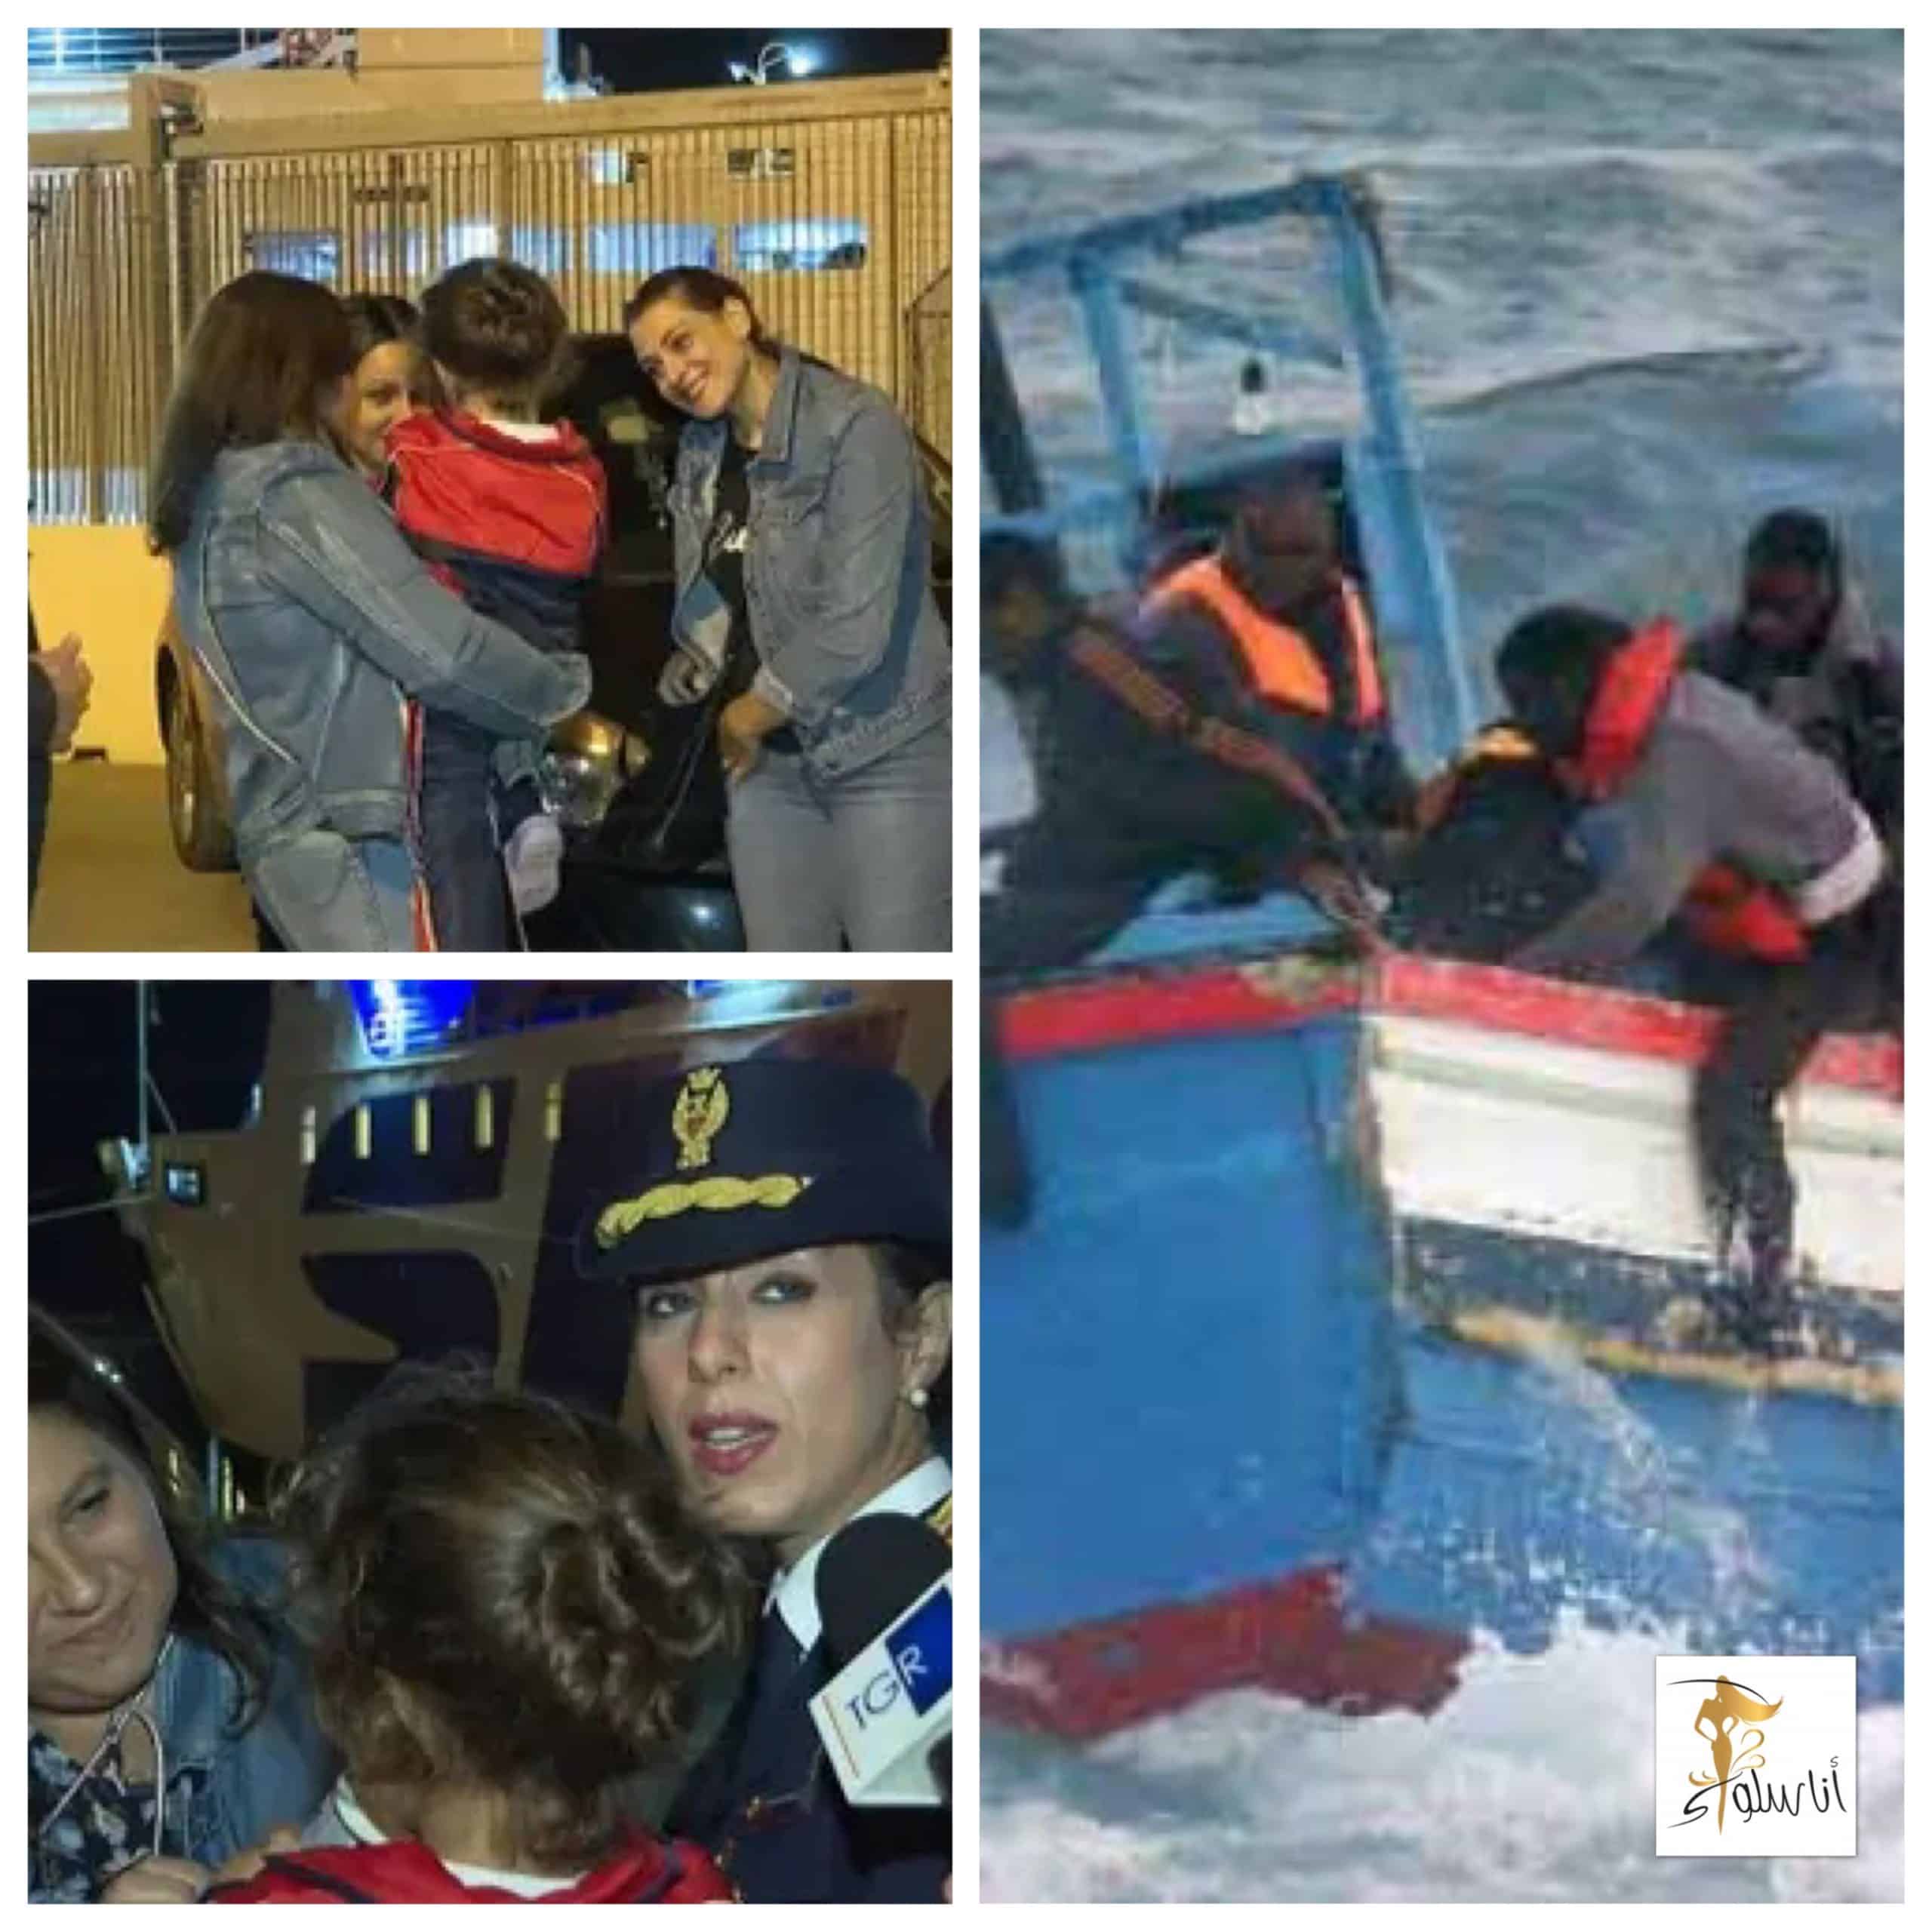 突尼斯四歲女孩是非法移民船